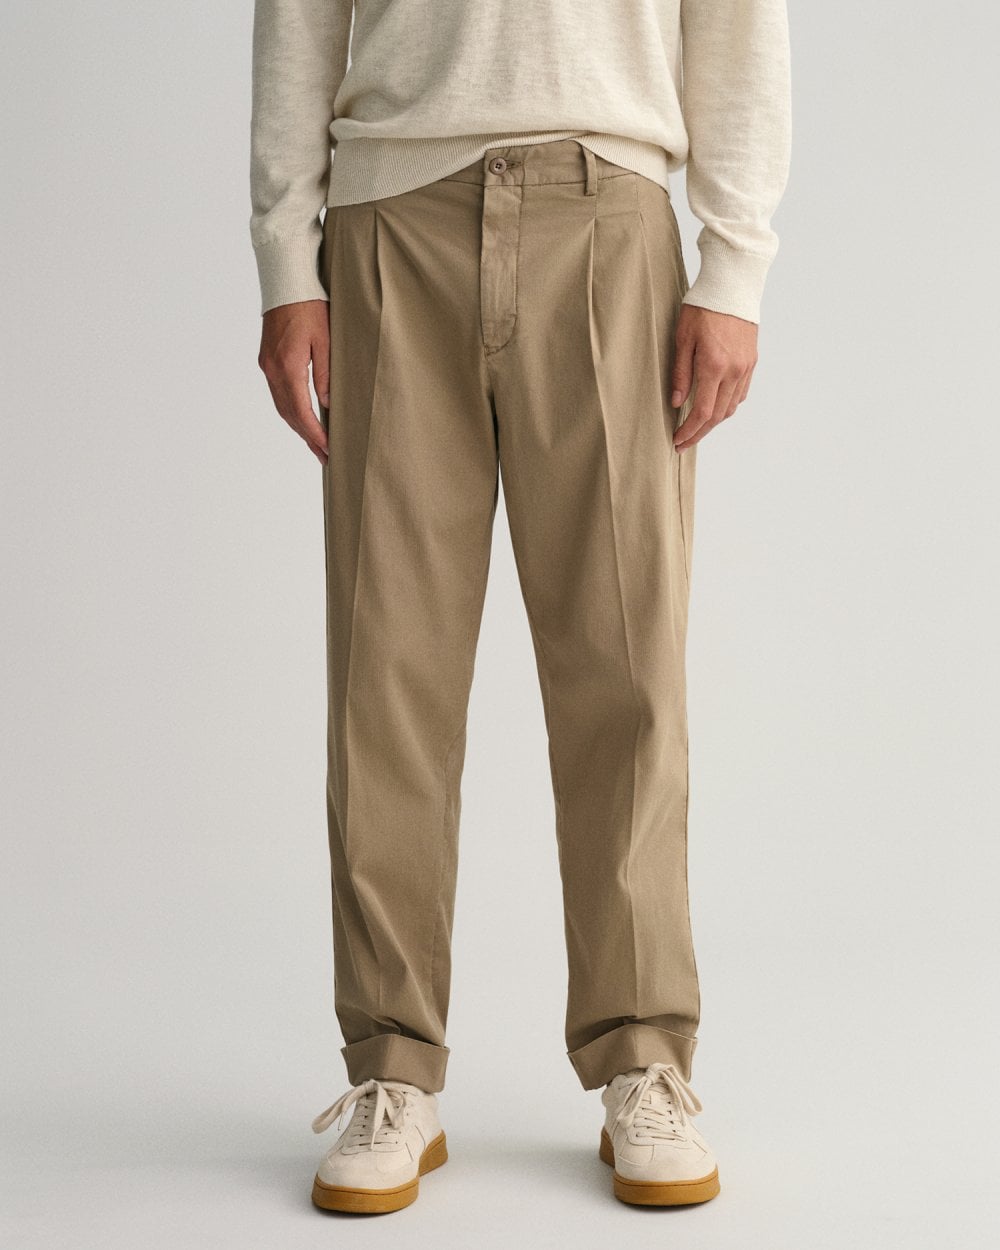 Casual Elegance Pant Suit 18297 (Size 3X)